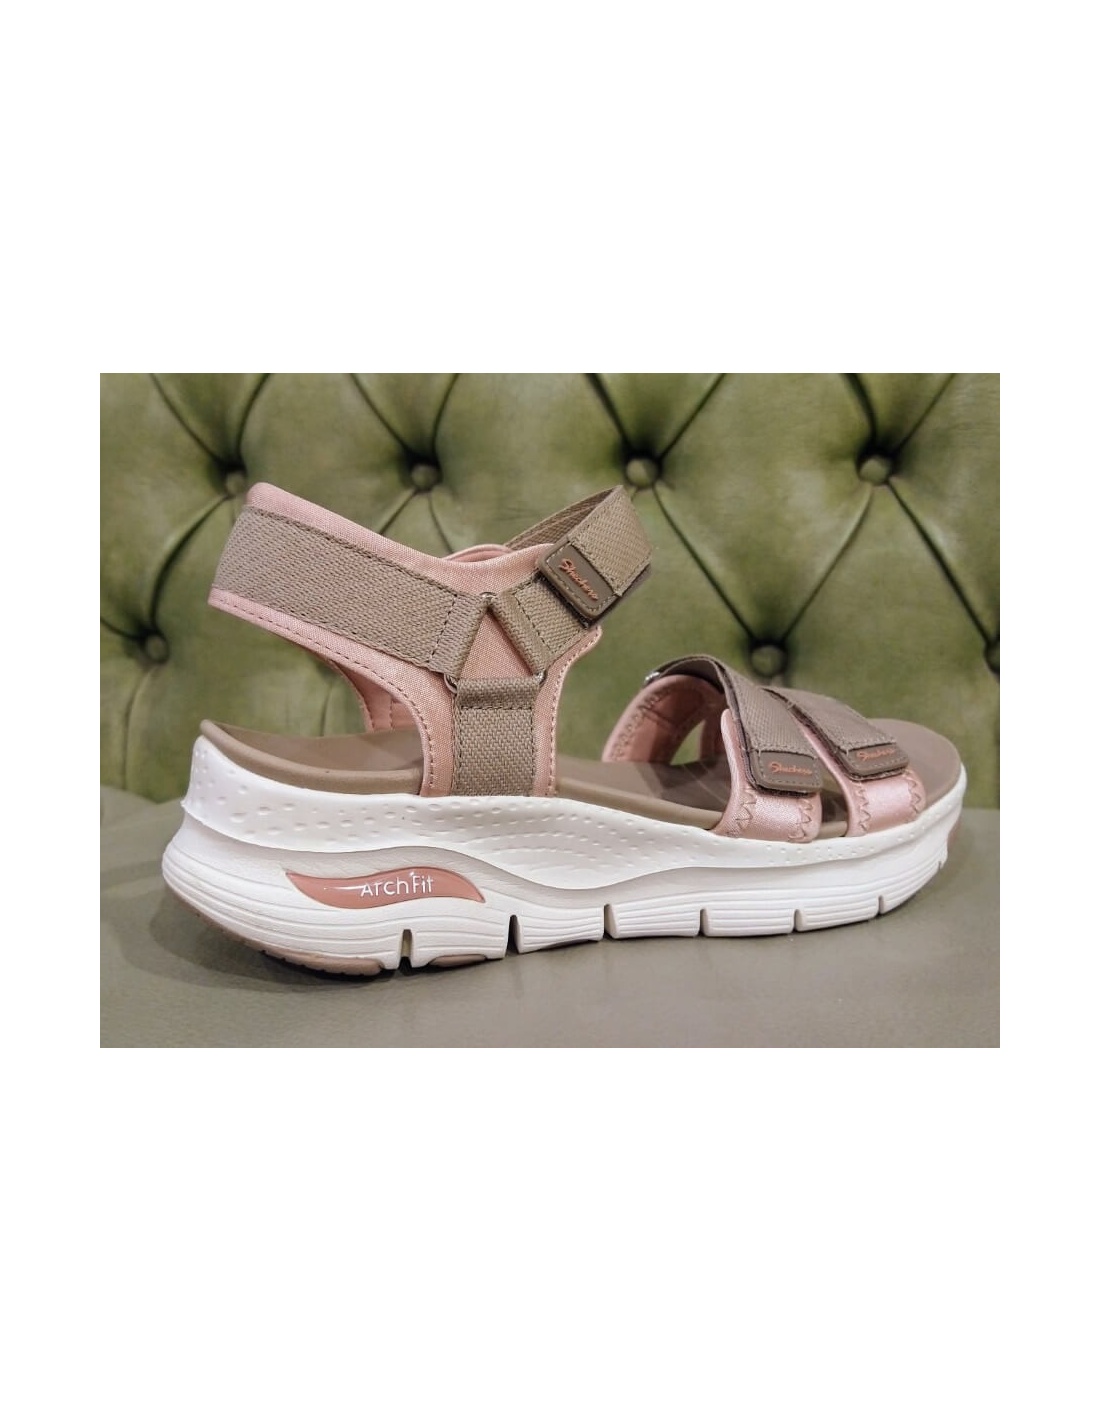 Arch Fit Sandals | Skechers